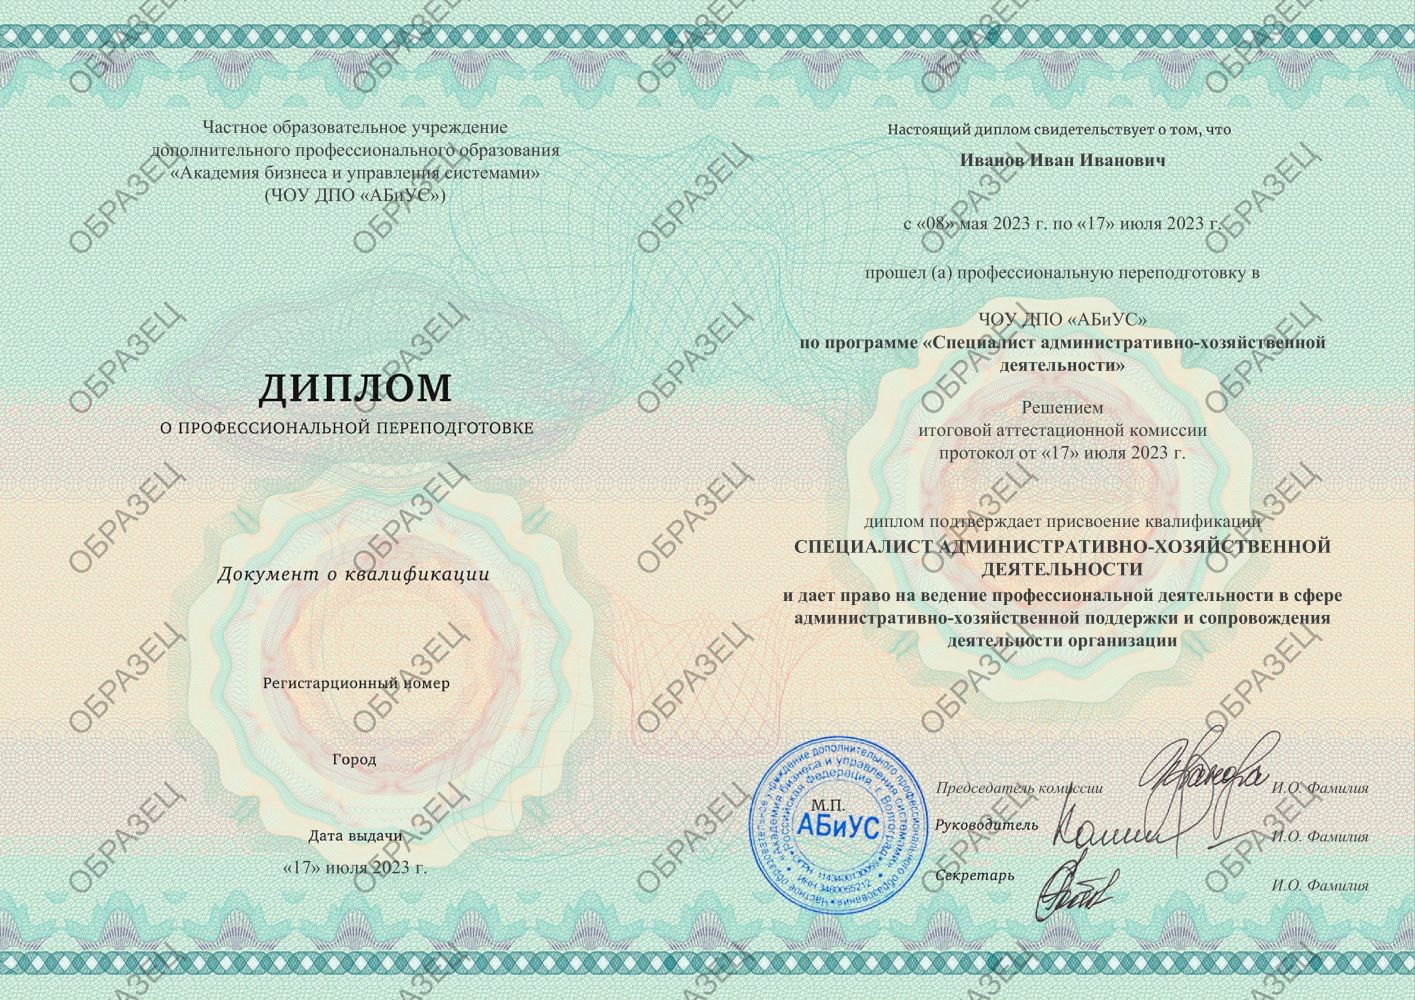 Диплом Специалист административно-хозяйственной деятельности 260 часов 14063 руб.